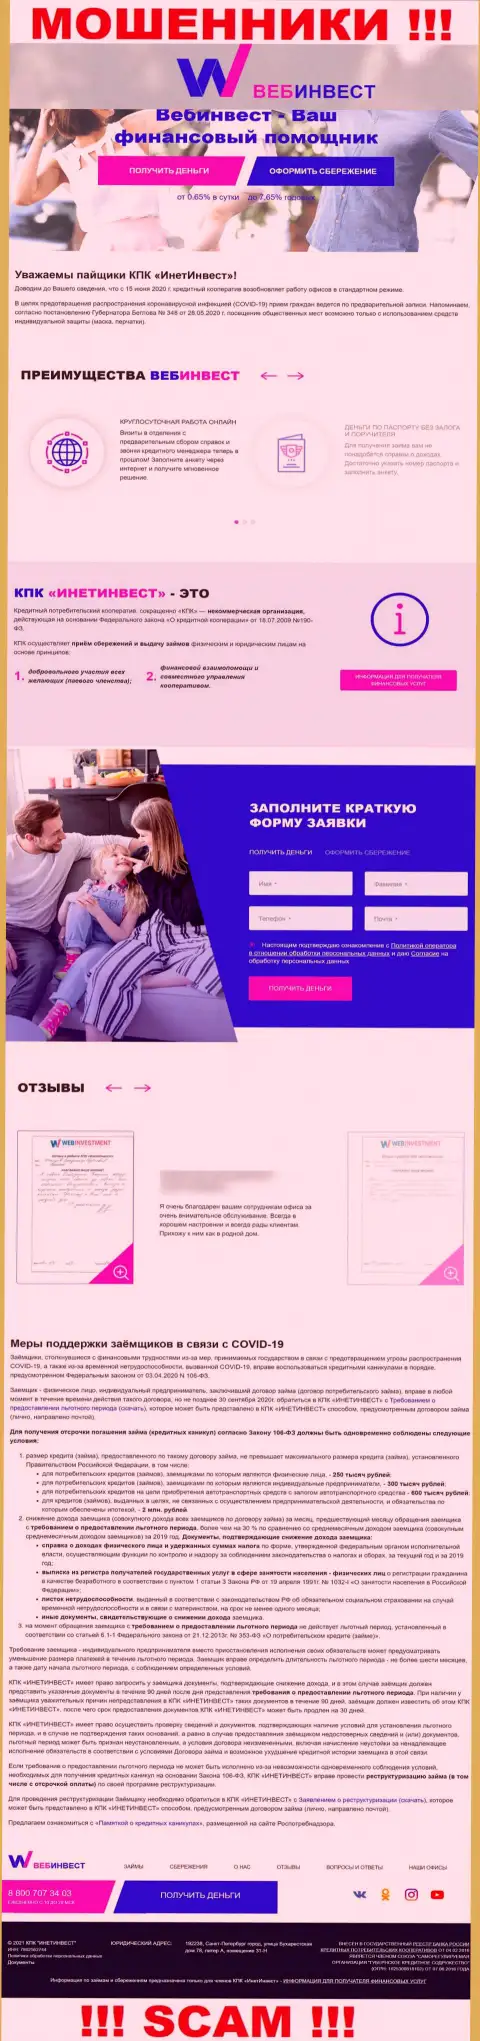 WebInvestment Ru - это официальный сайт internet мошенников WebInvestment Ru